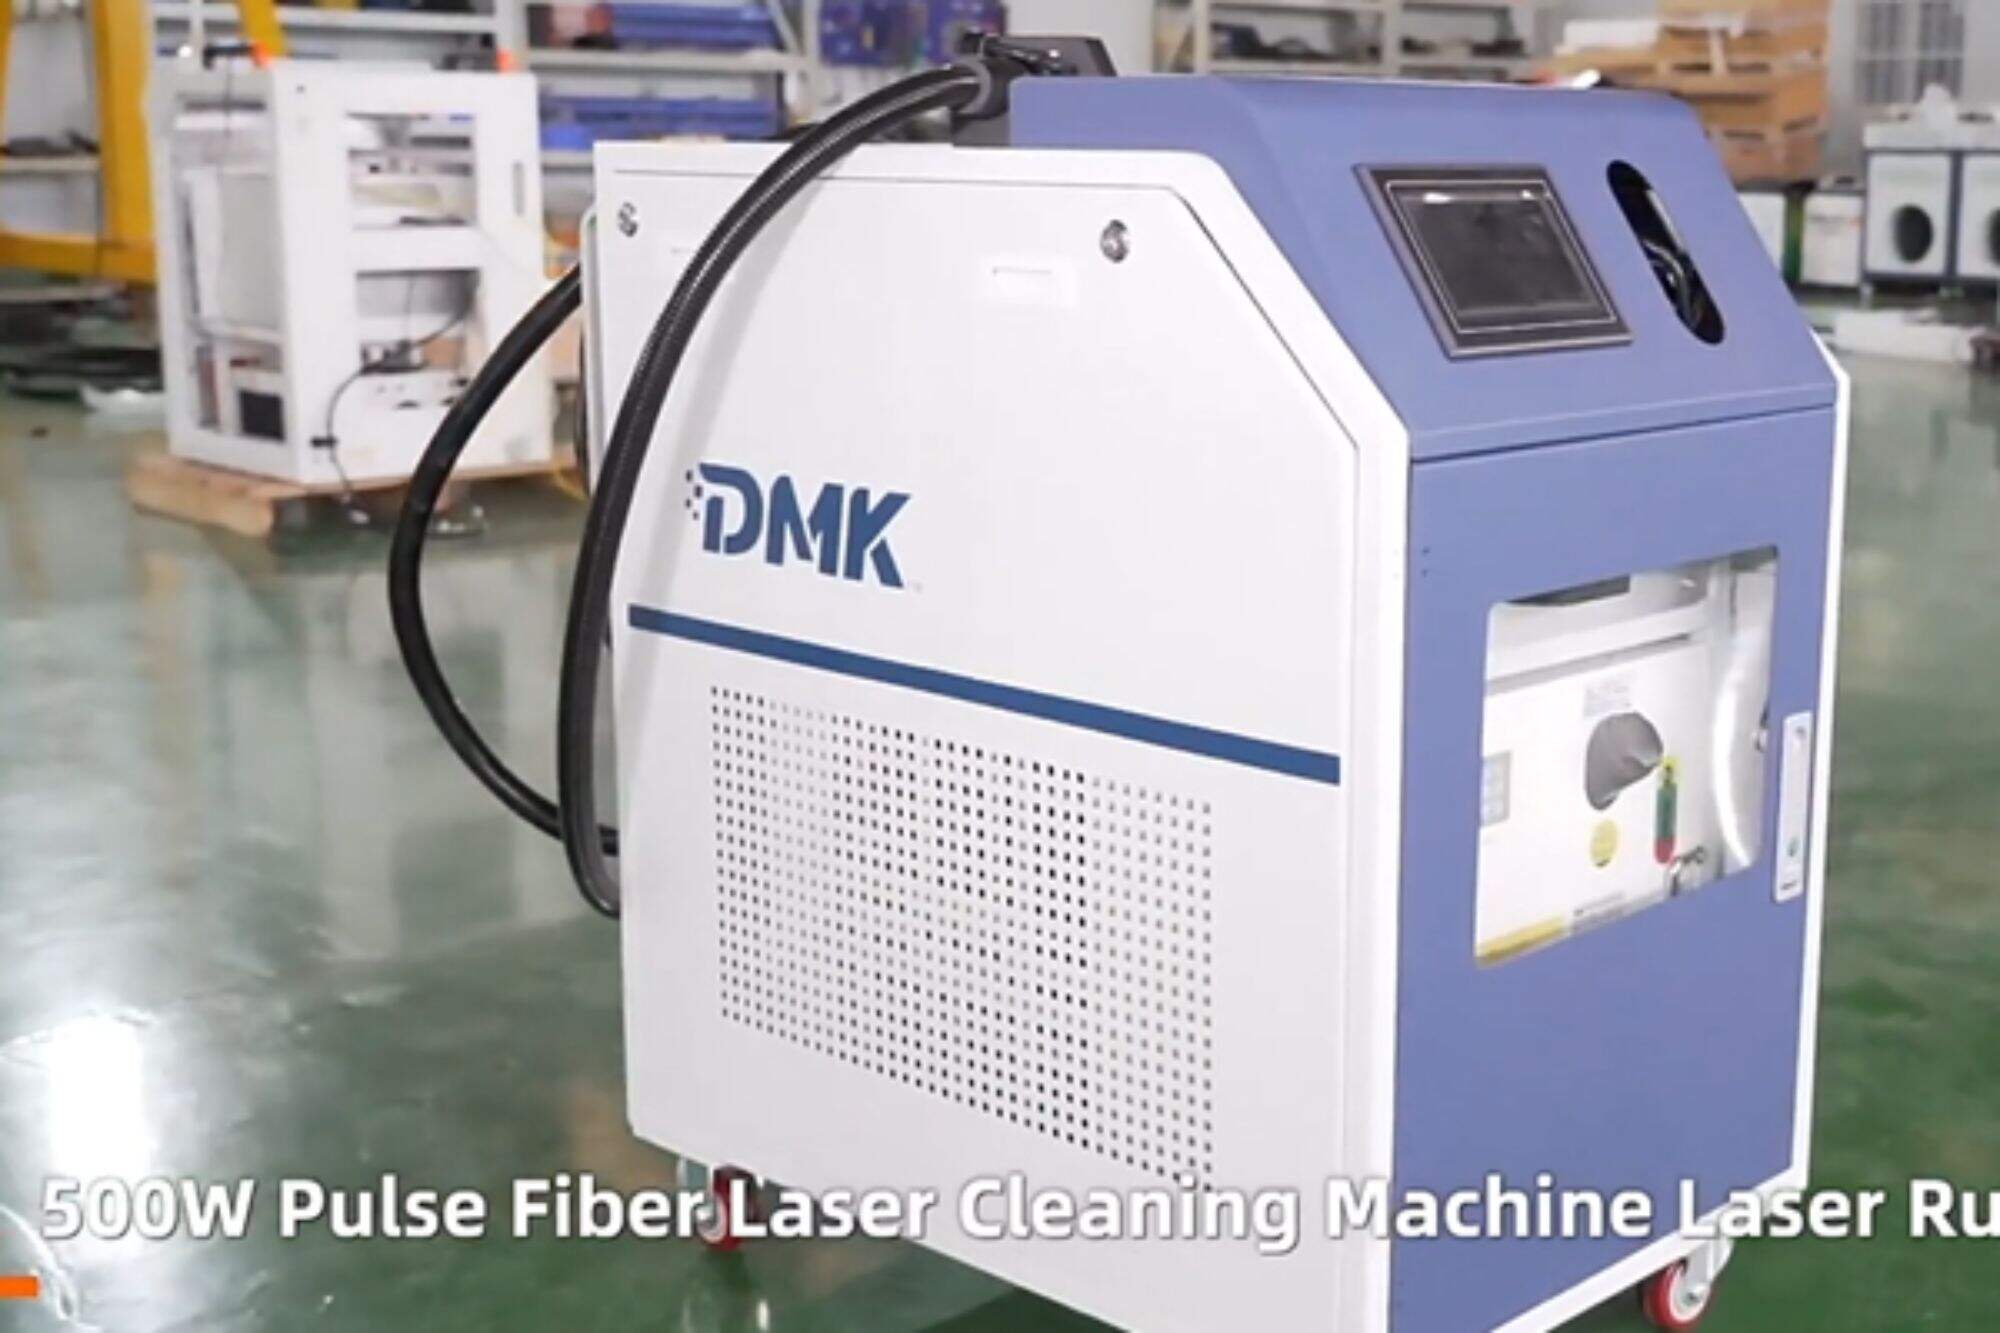 DMK 500w pulzní laserový čisticí stroj